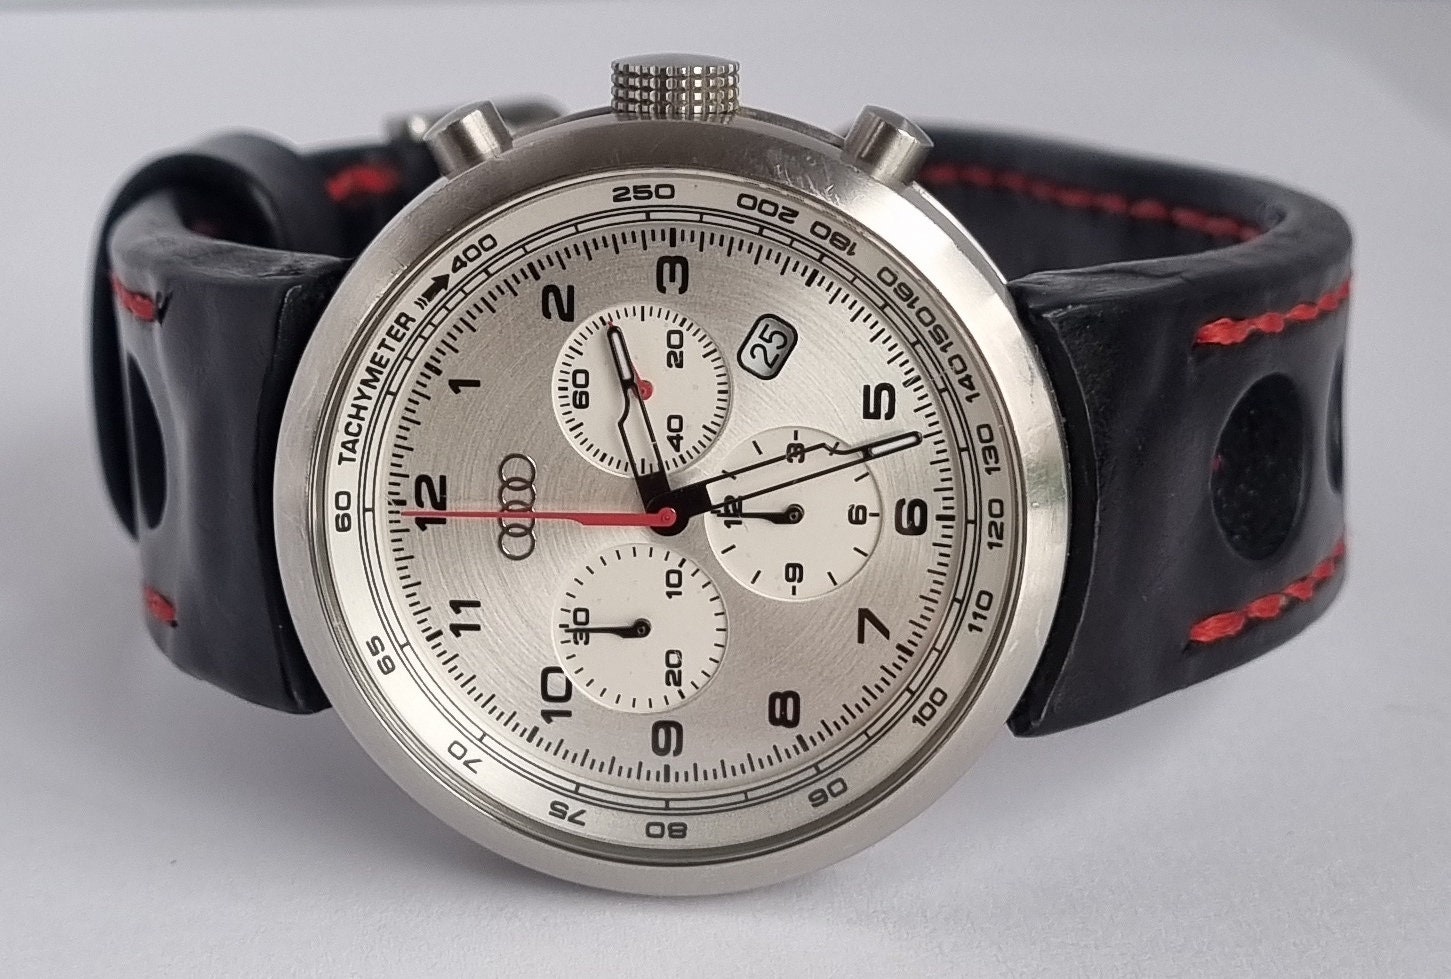 uhr #uhren #armbanduhr #watch #watches #chronograph #chronometer #design  #designer #marken #markenuhr #original #analog #digi…